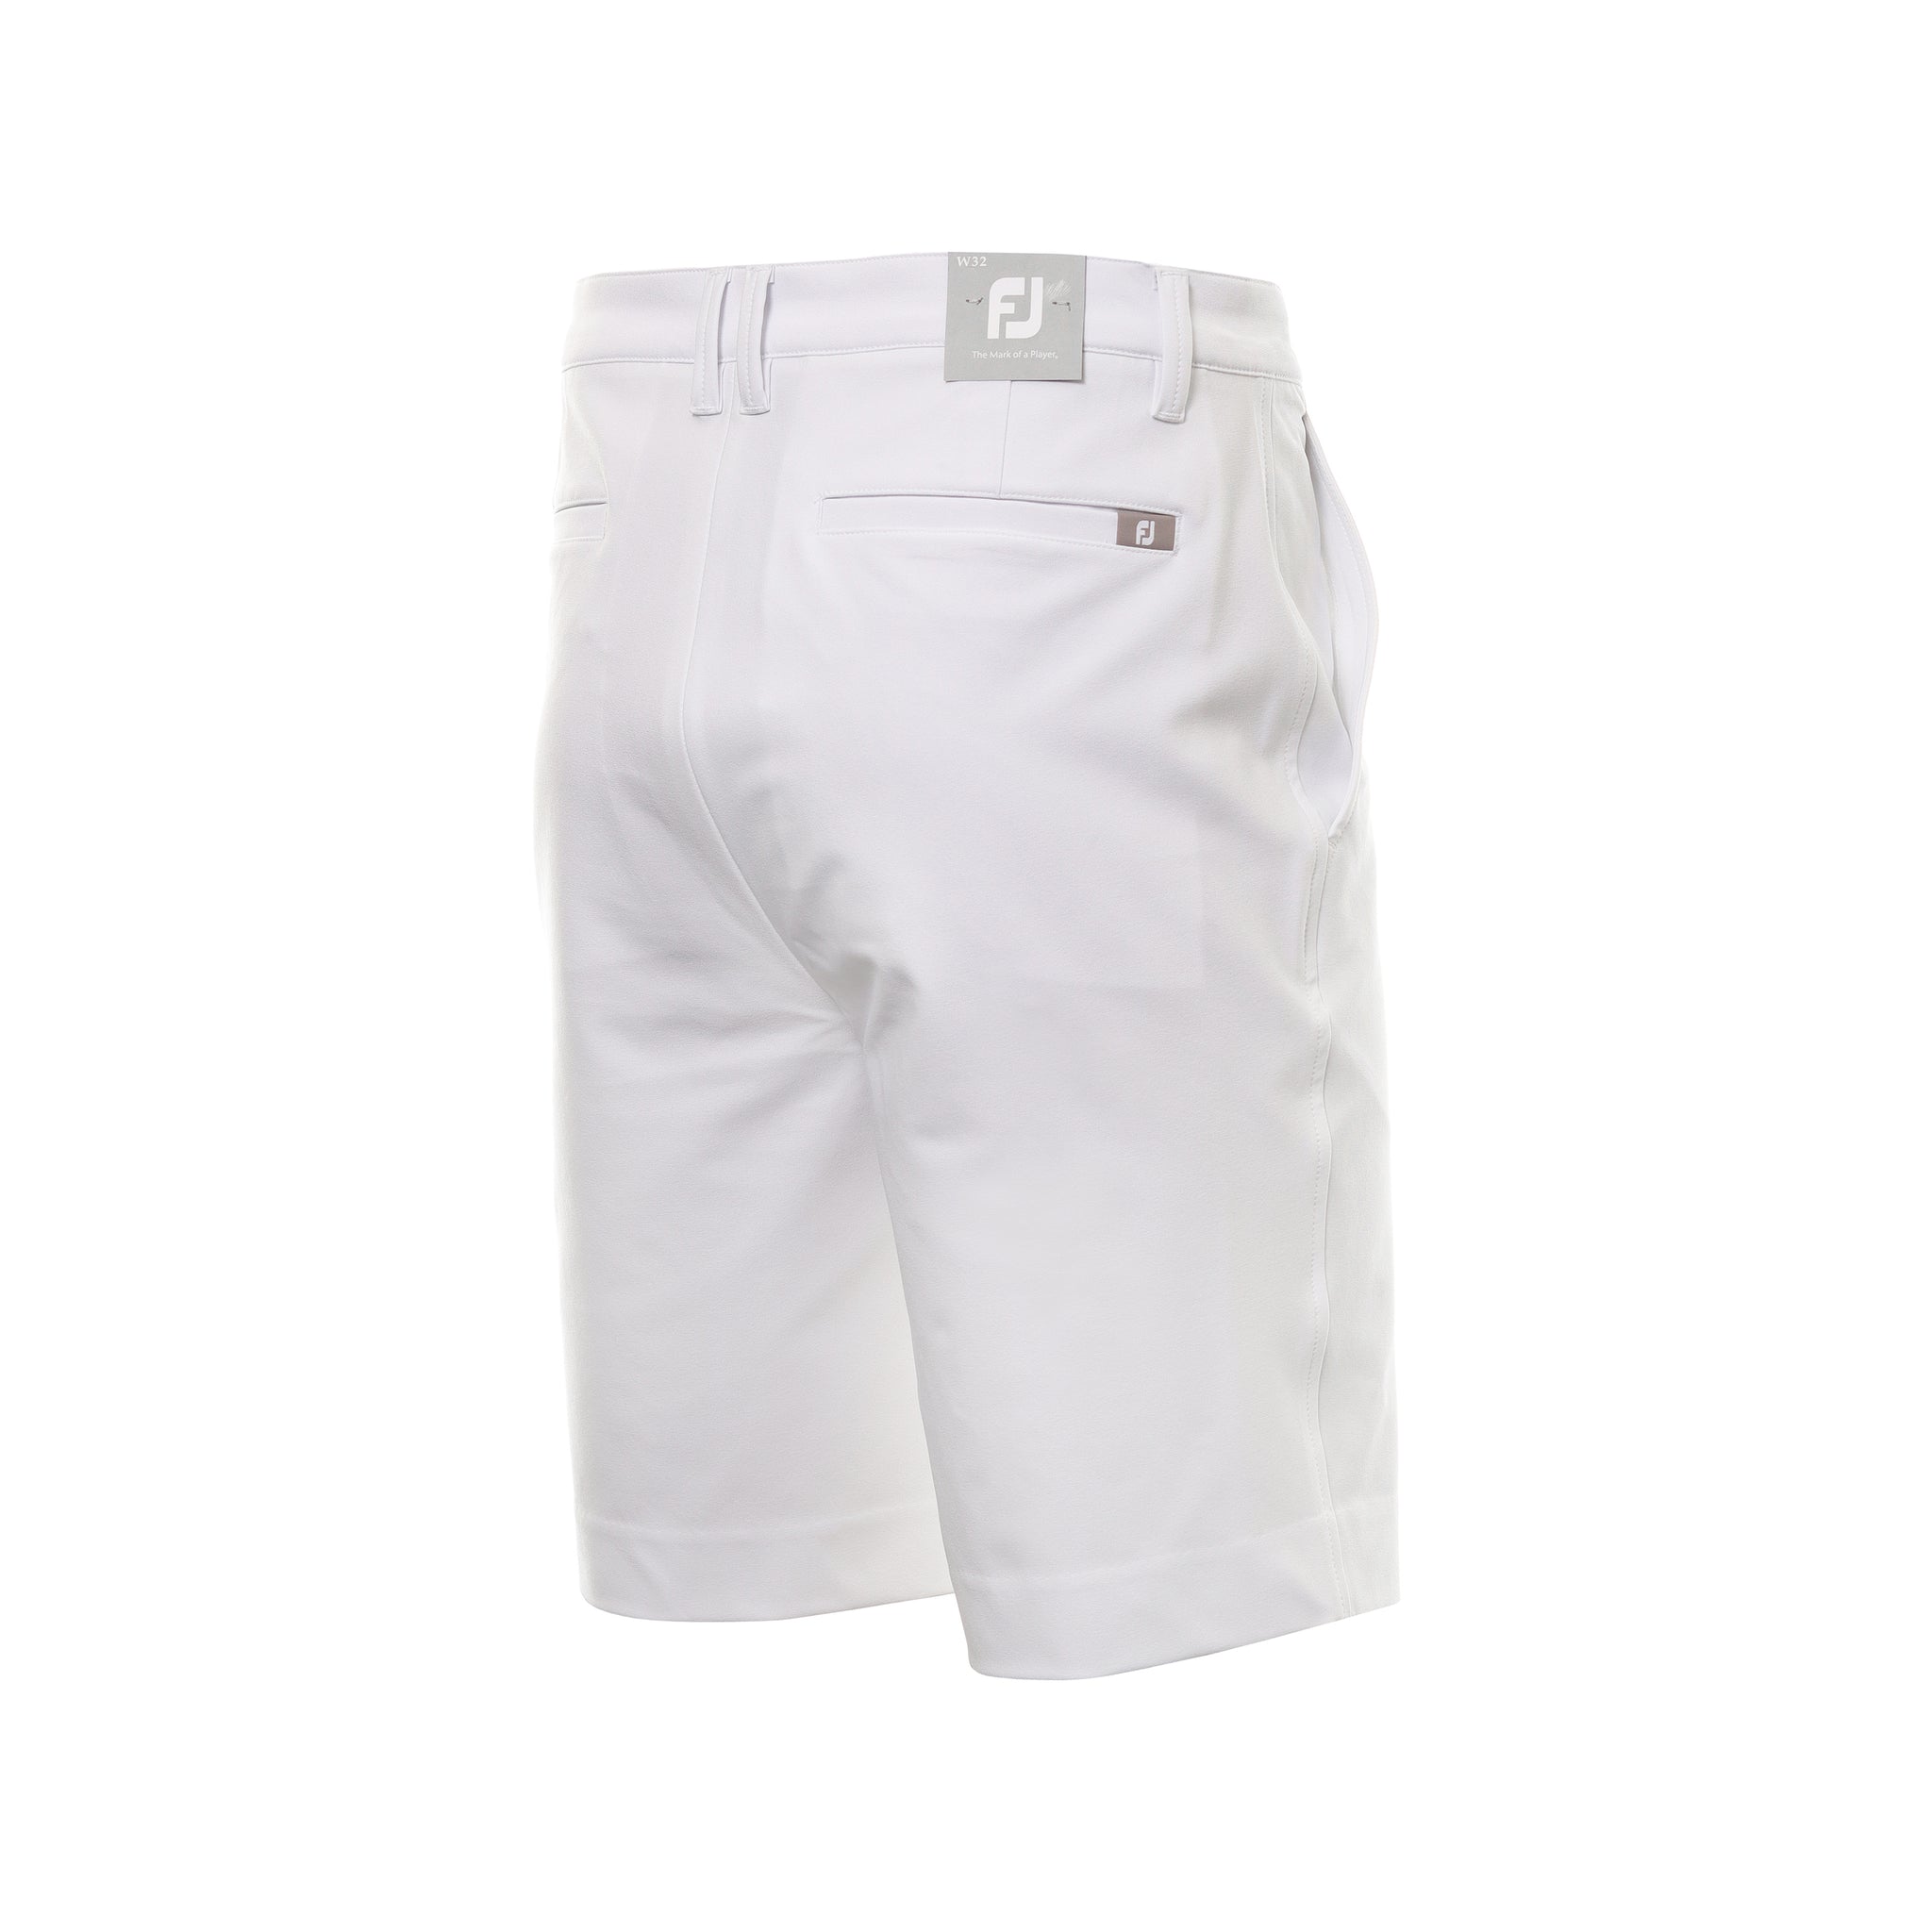 footjoy-fj-performance-shorts-80163-white